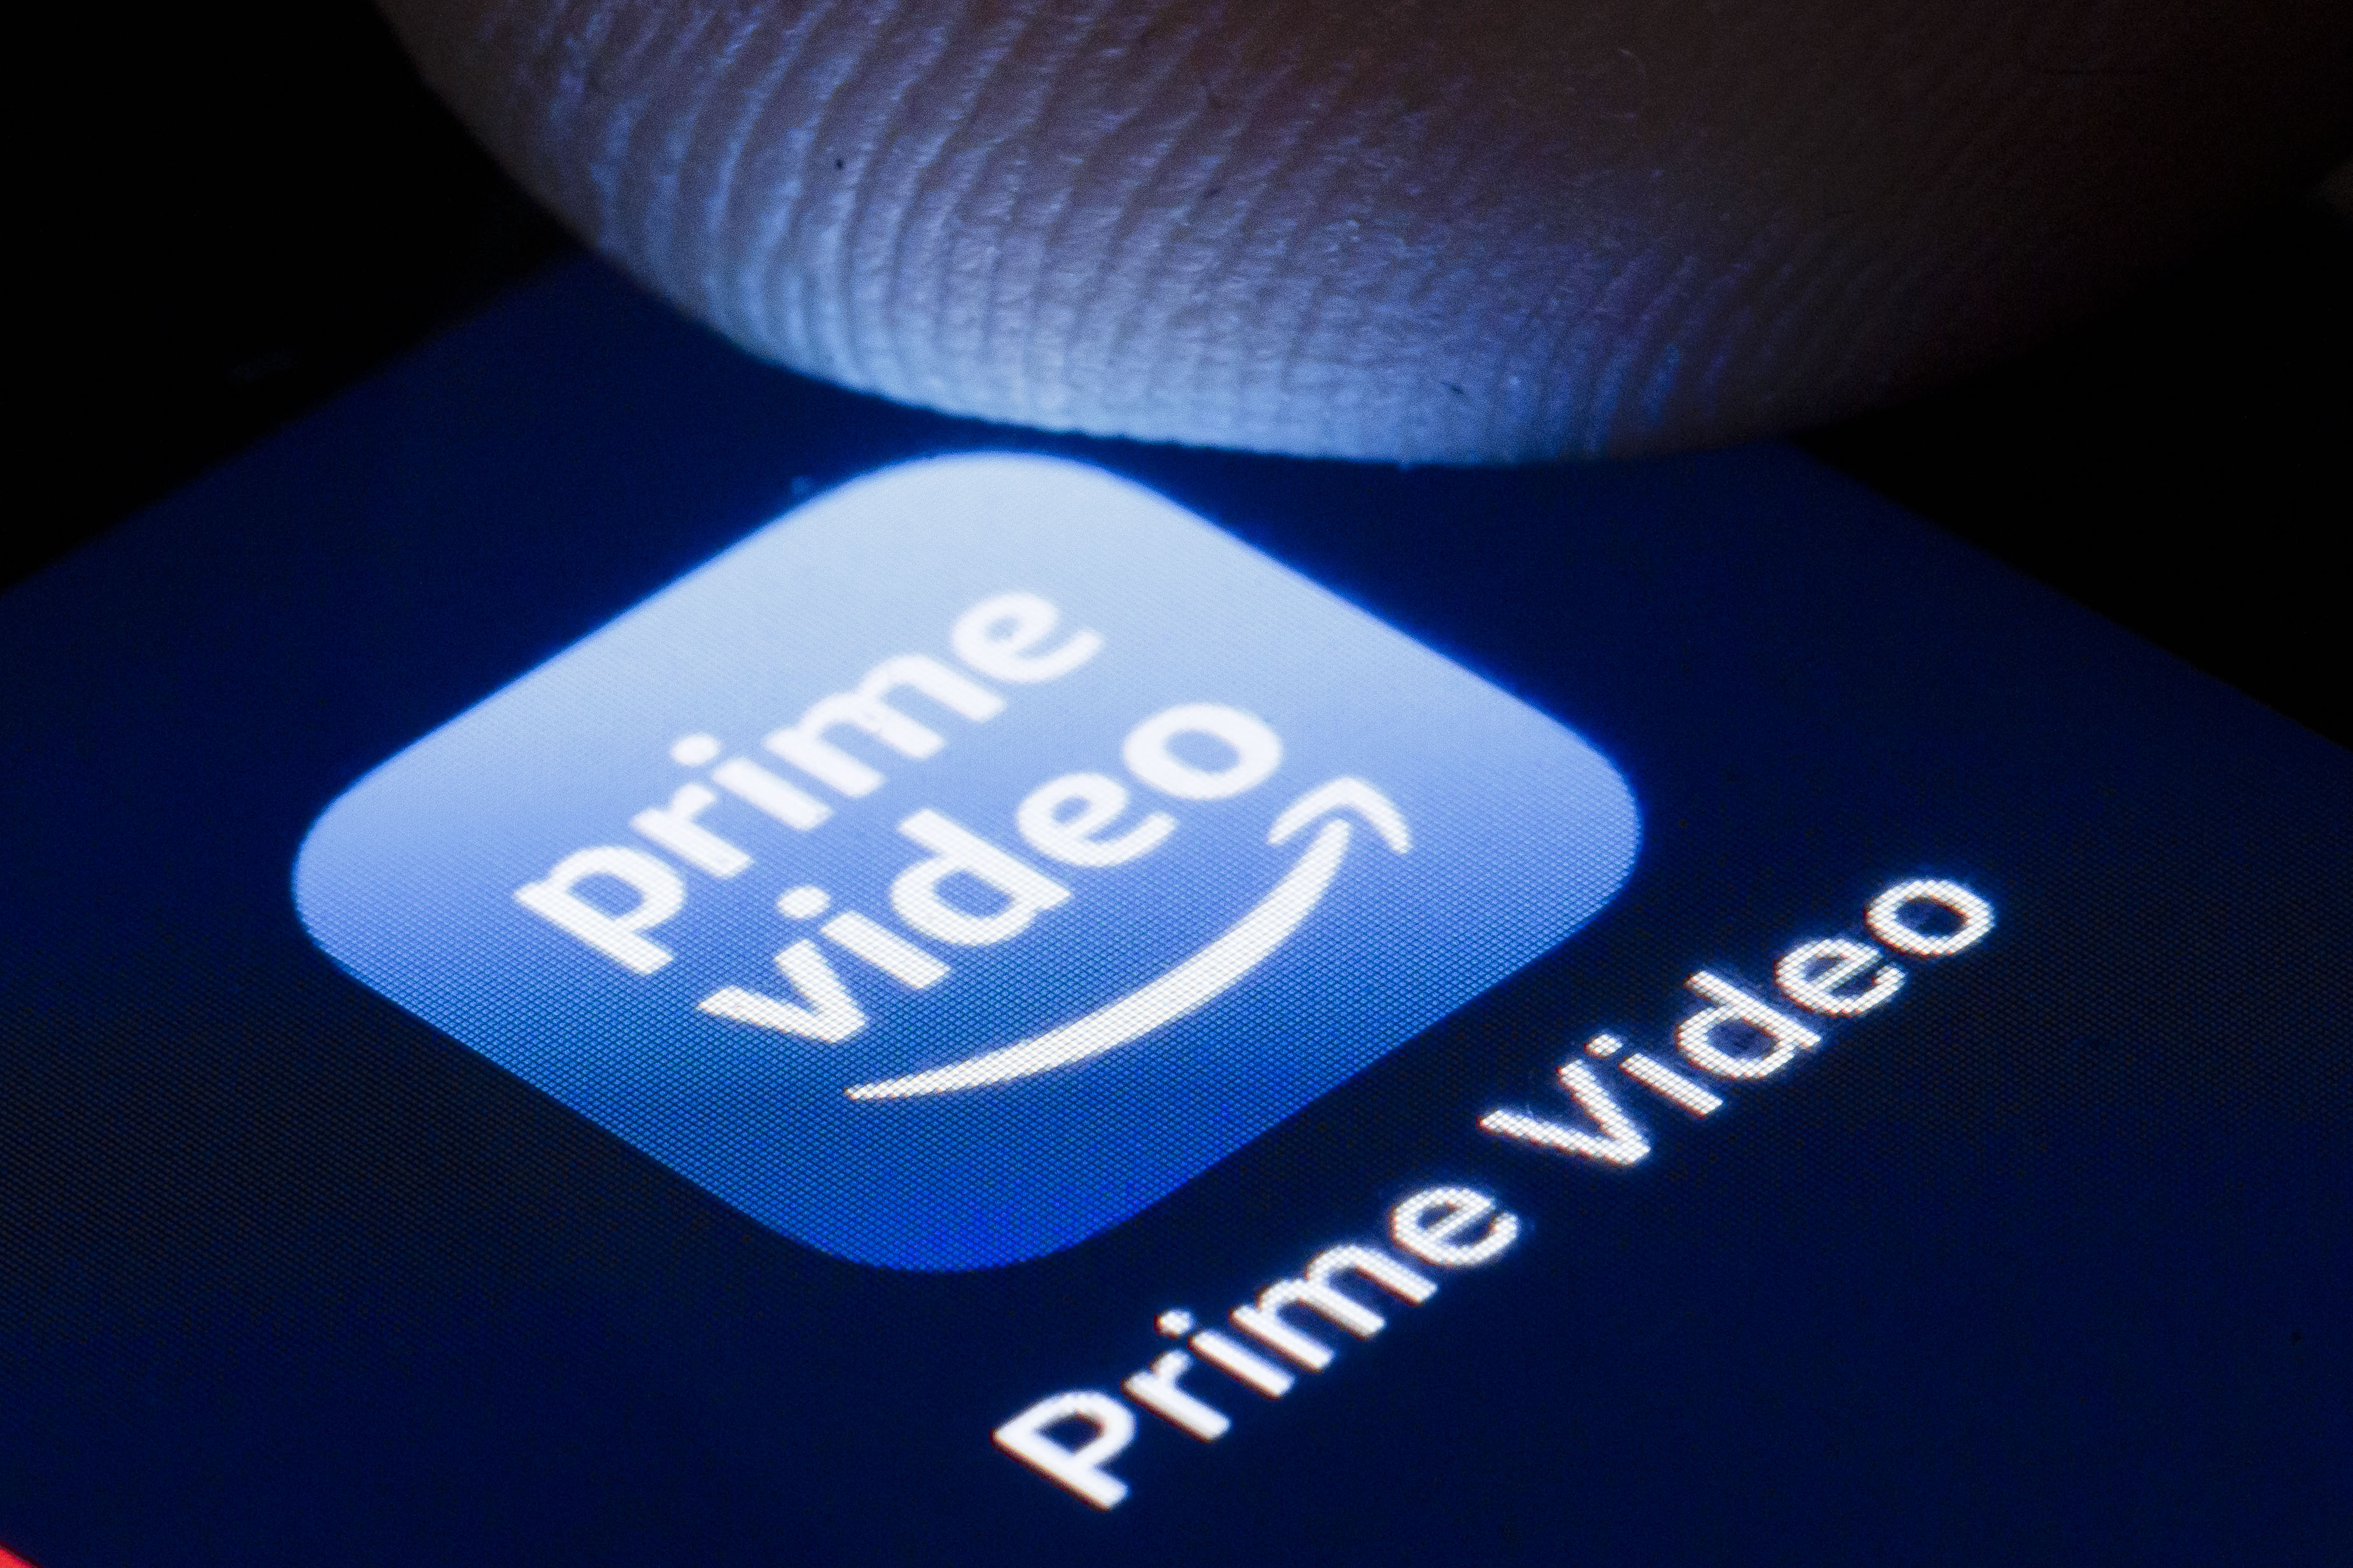 Amazon Prime Video app.